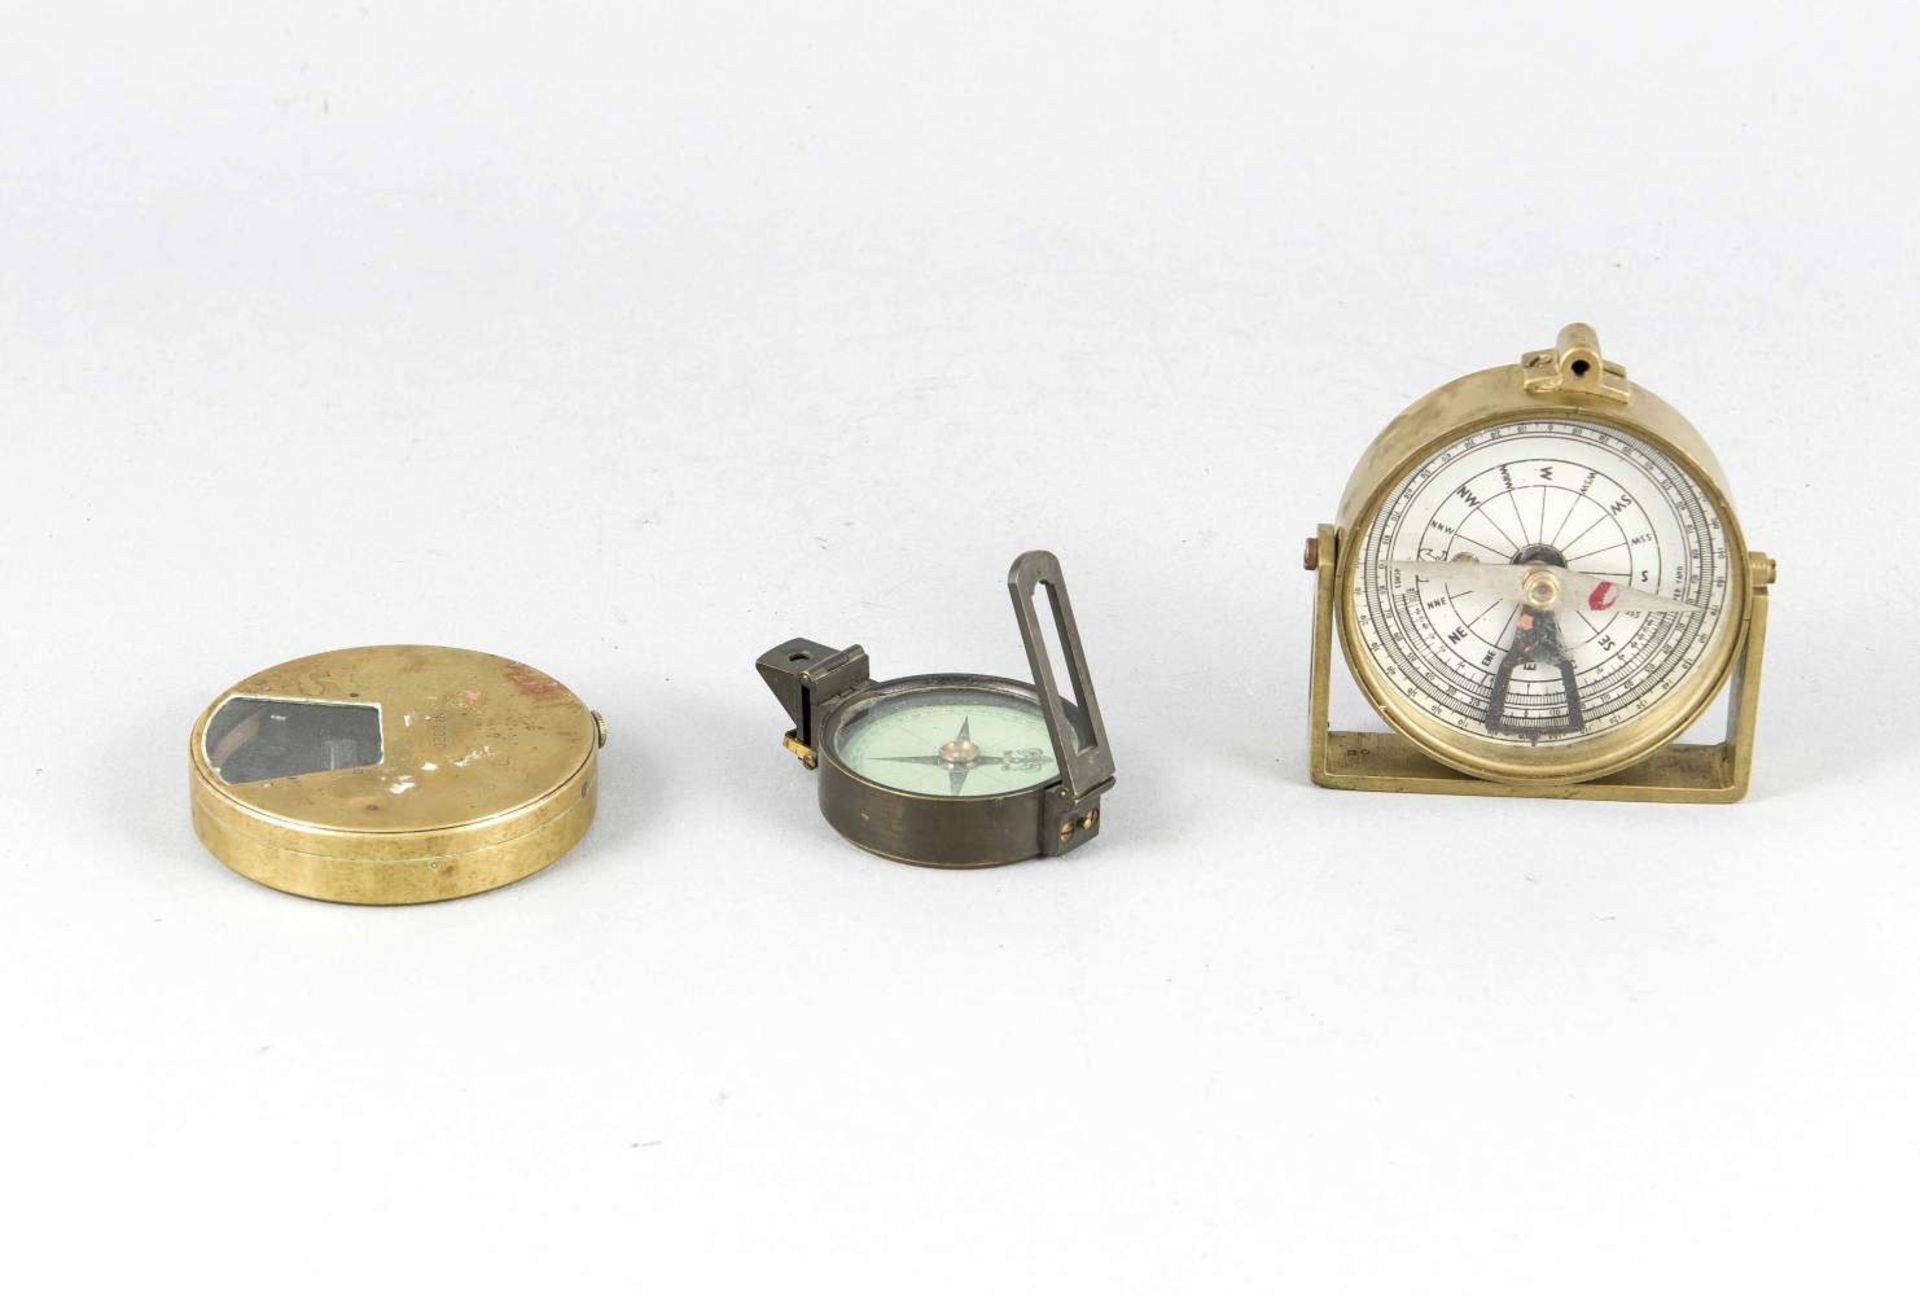 Zwei Kompasse und ein Meßgerät, 20. Jh, jeweils im runden Messinggehäuse, D. 4,5 - 7,5 cm